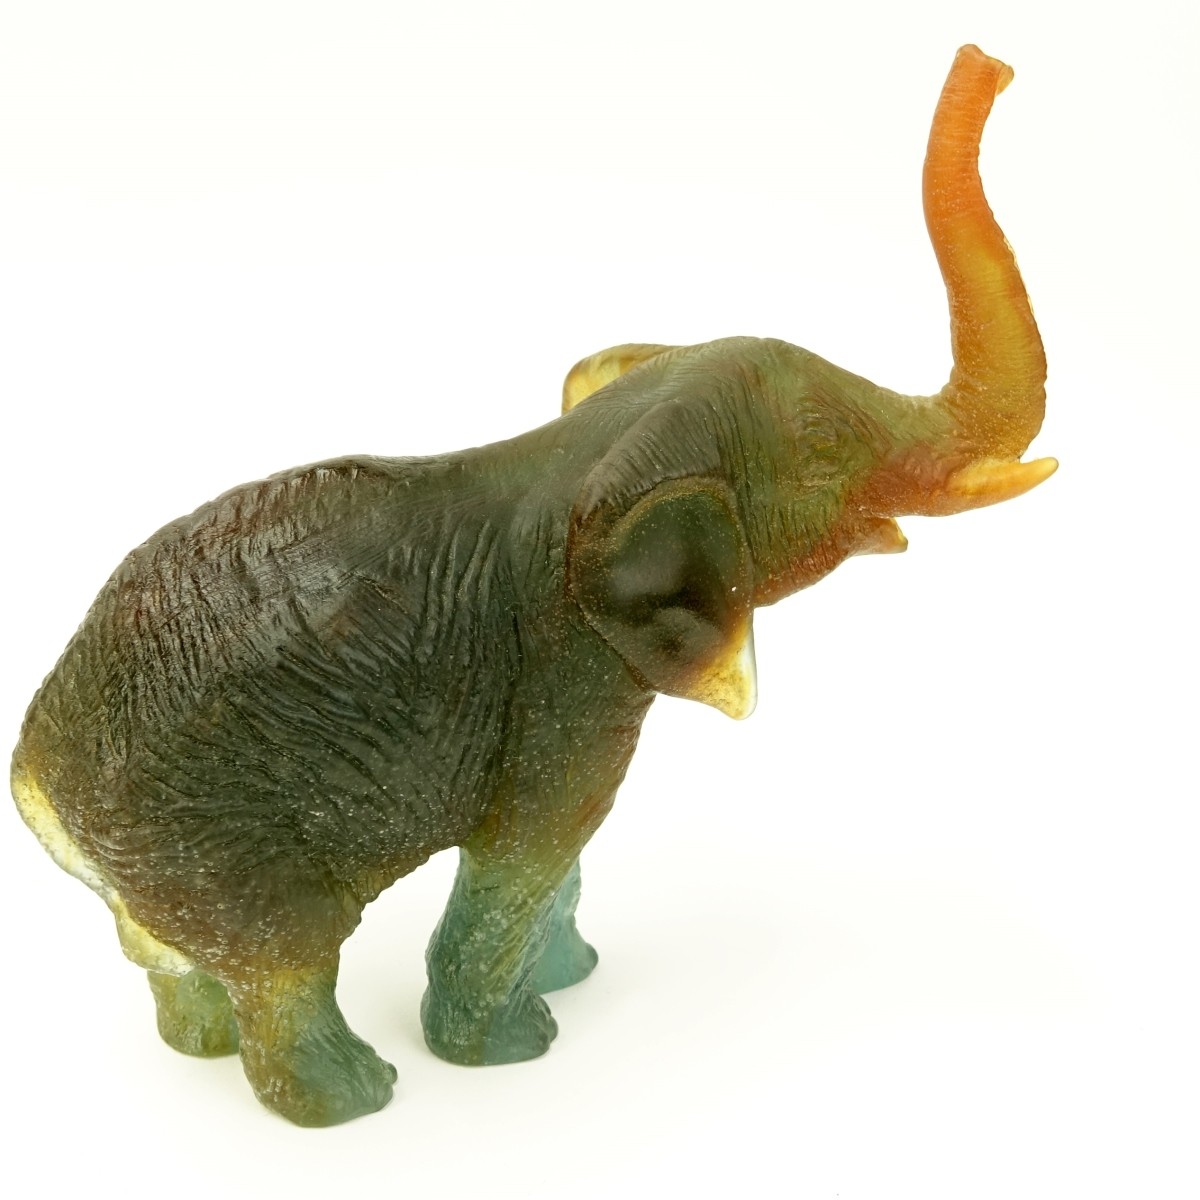 Daum Elephant Figurine